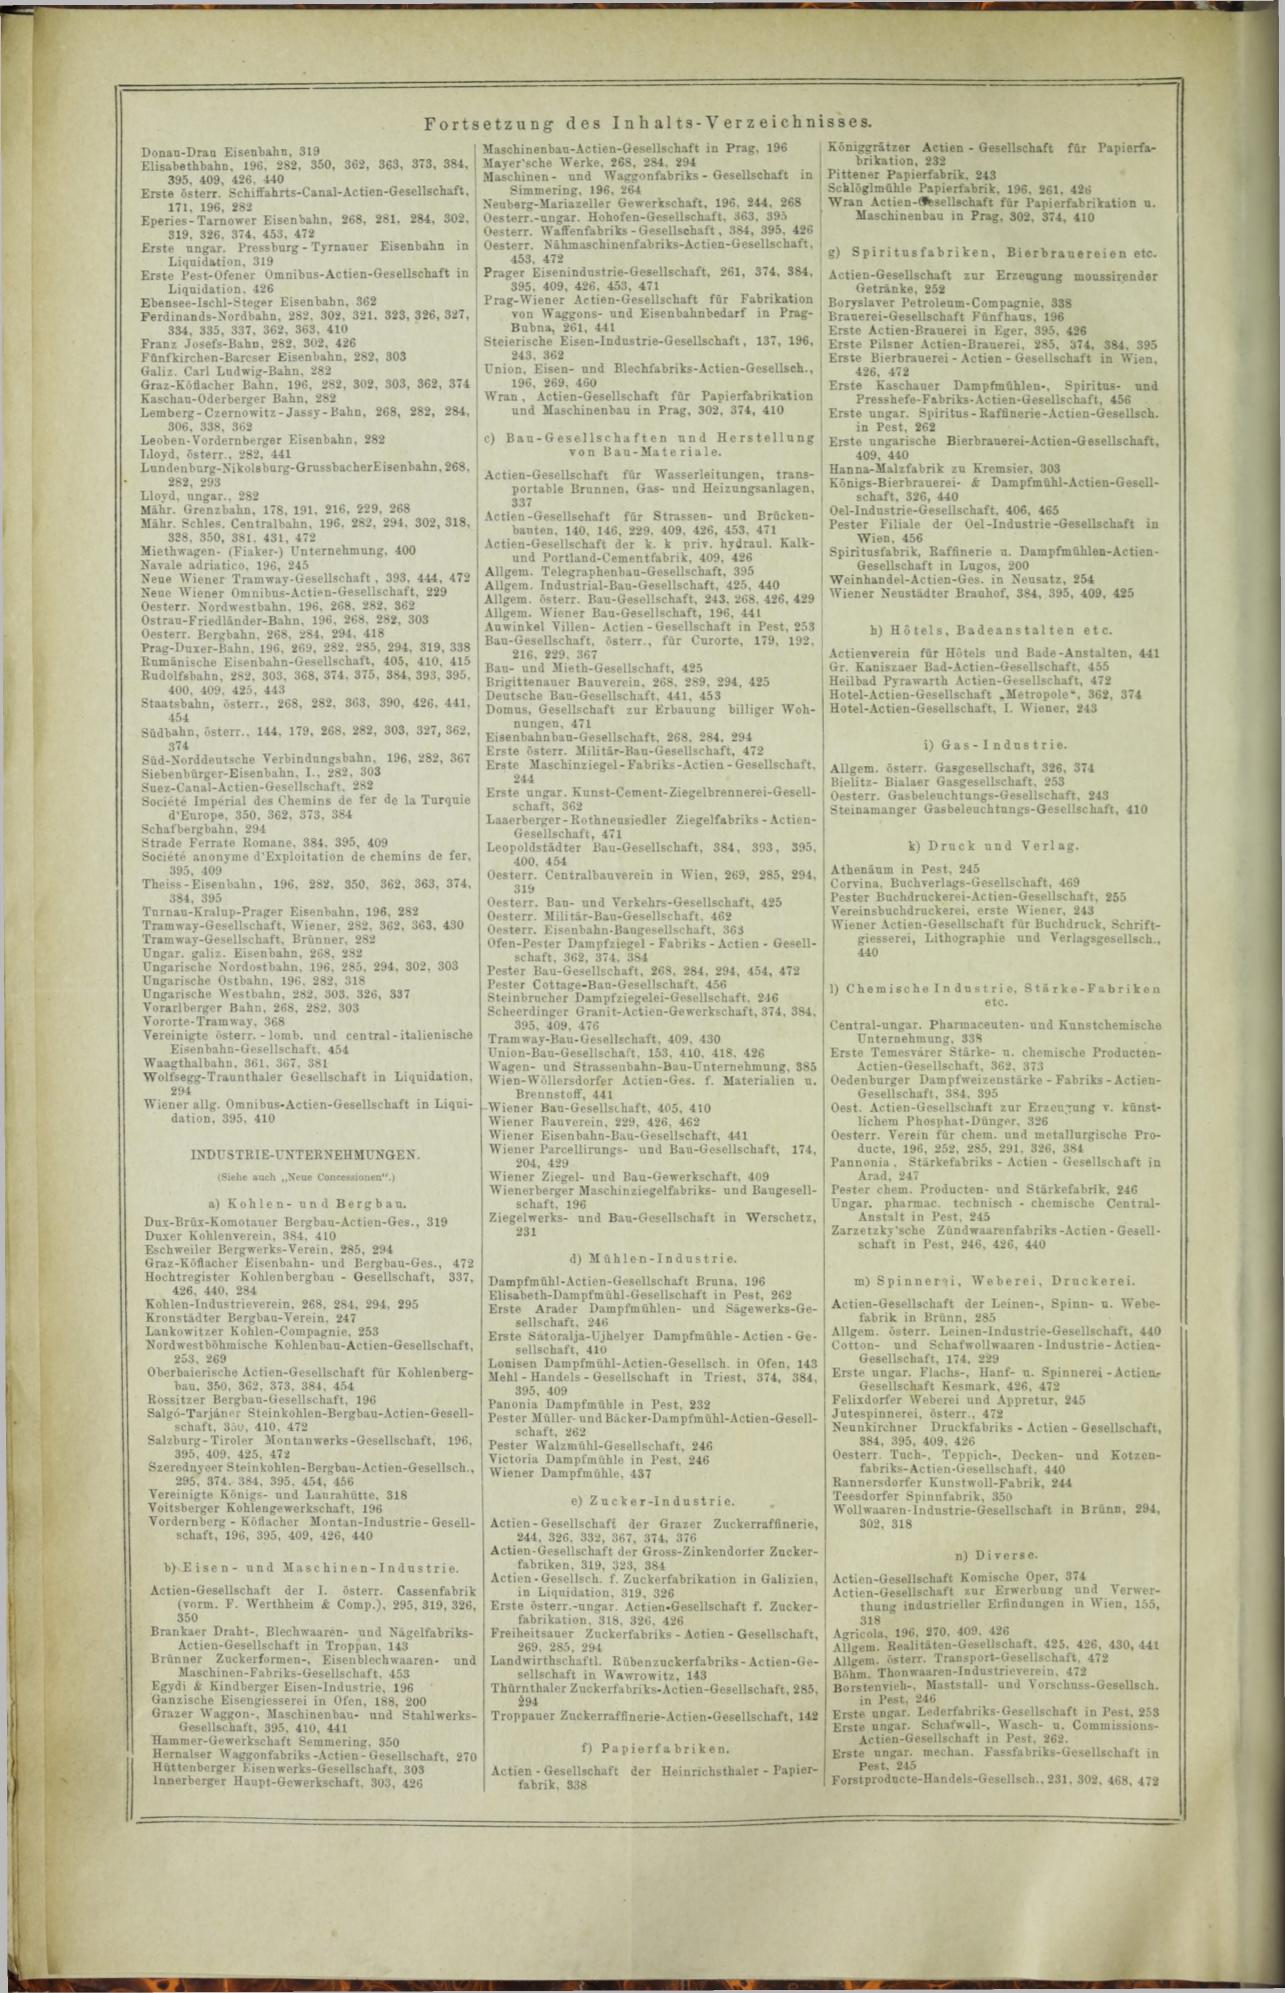 Der Tresor 16.10.1872 - Page 12